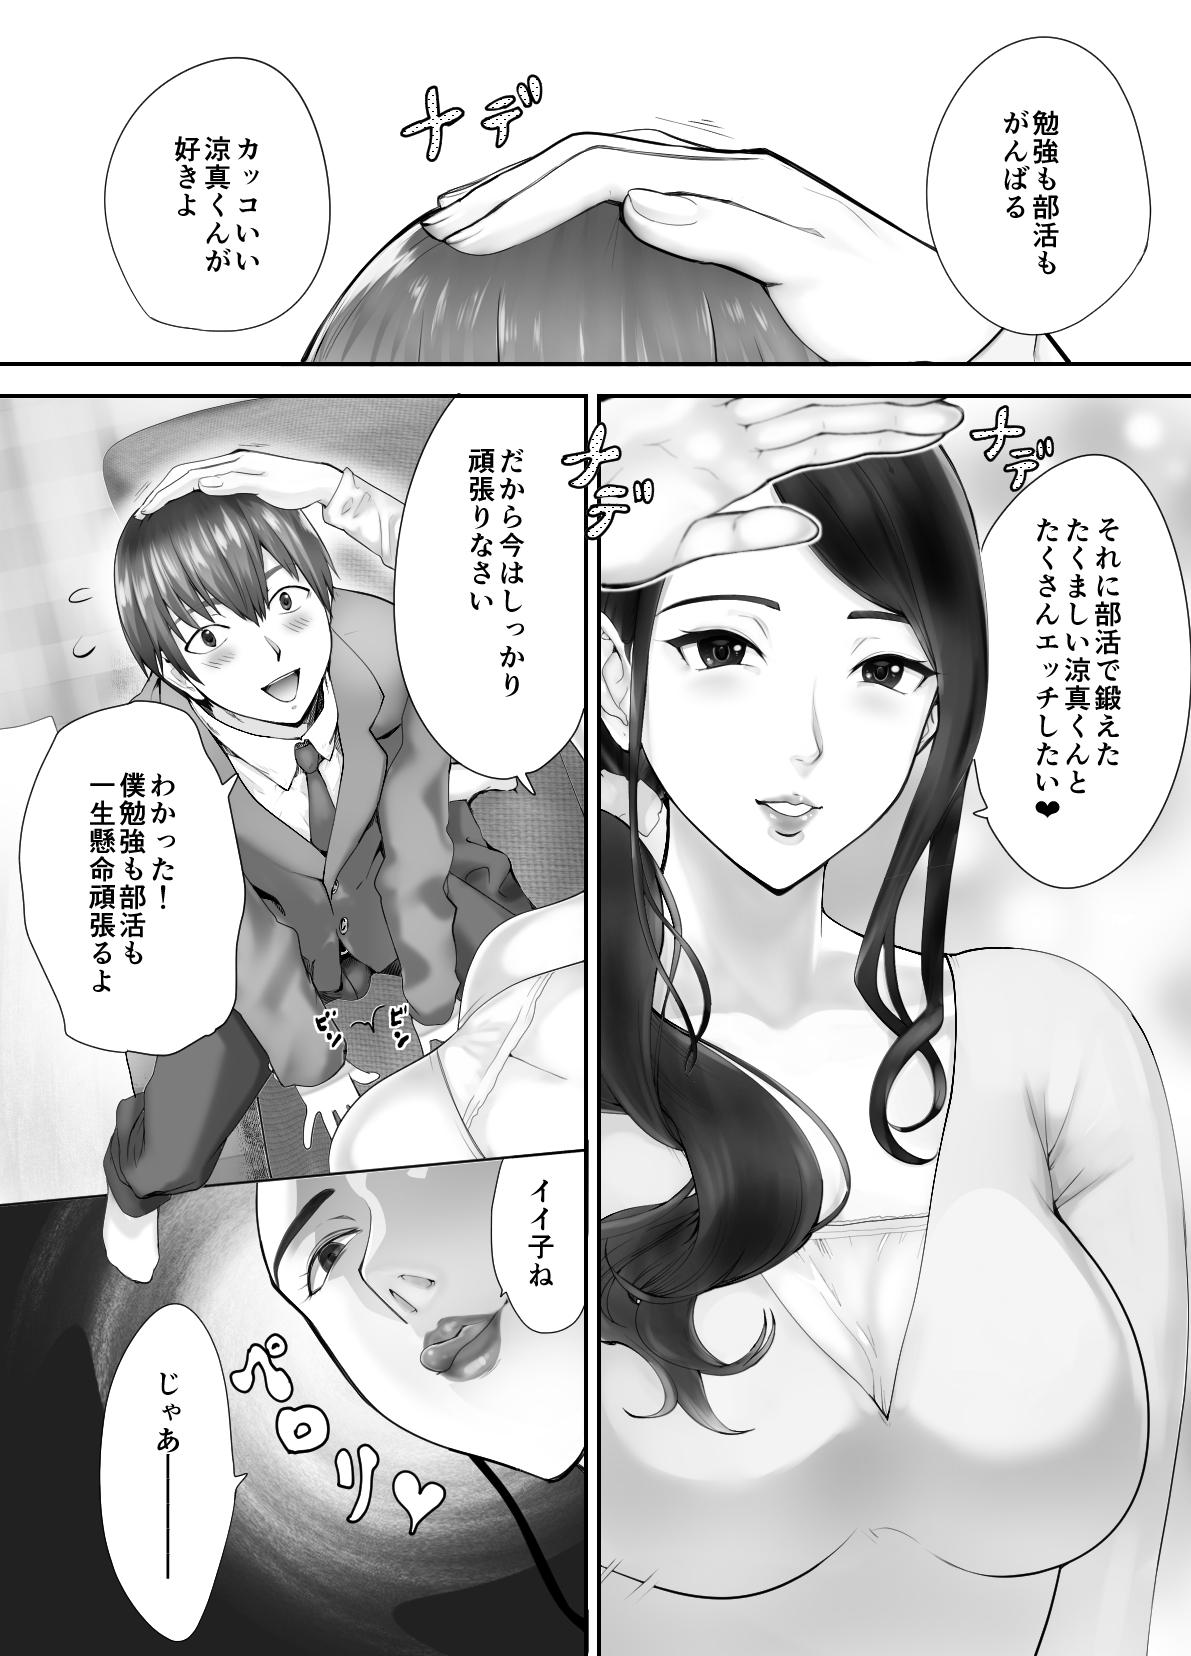 Hunks Osananajimi ga Mama to Yatte Imasu. 3 - Original Sfm - Page 10